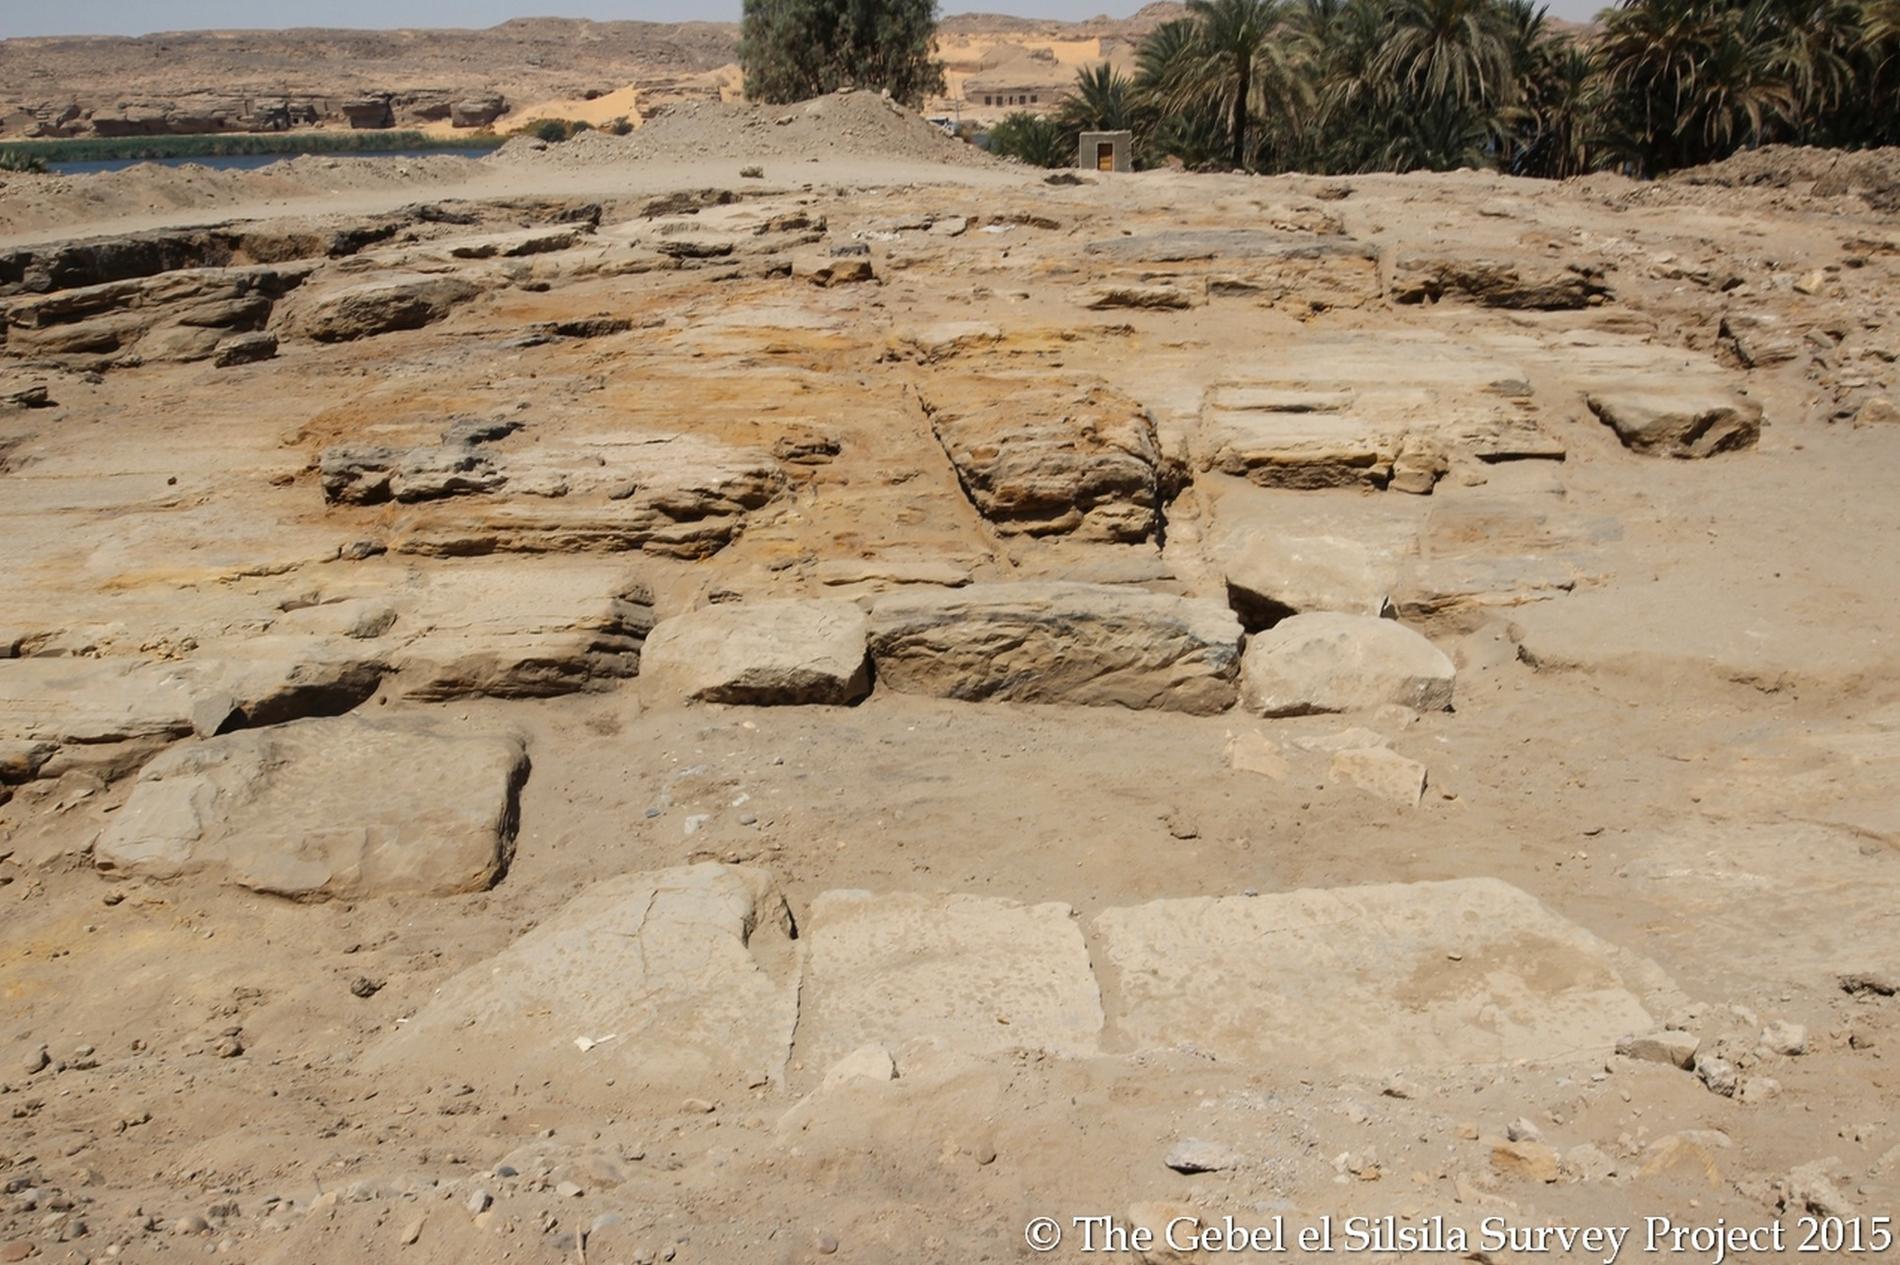 Svenska Maria Nilsson och hennes forskargrupp har hittat grunderna till ett antikt tempel i Egypten.
Förhoppningsvis är det inte deras sista fynd.
– Vi ser det som vår livsuppgift att ta tag i det arkeologiska arbetet på det här platsen, säger hon.